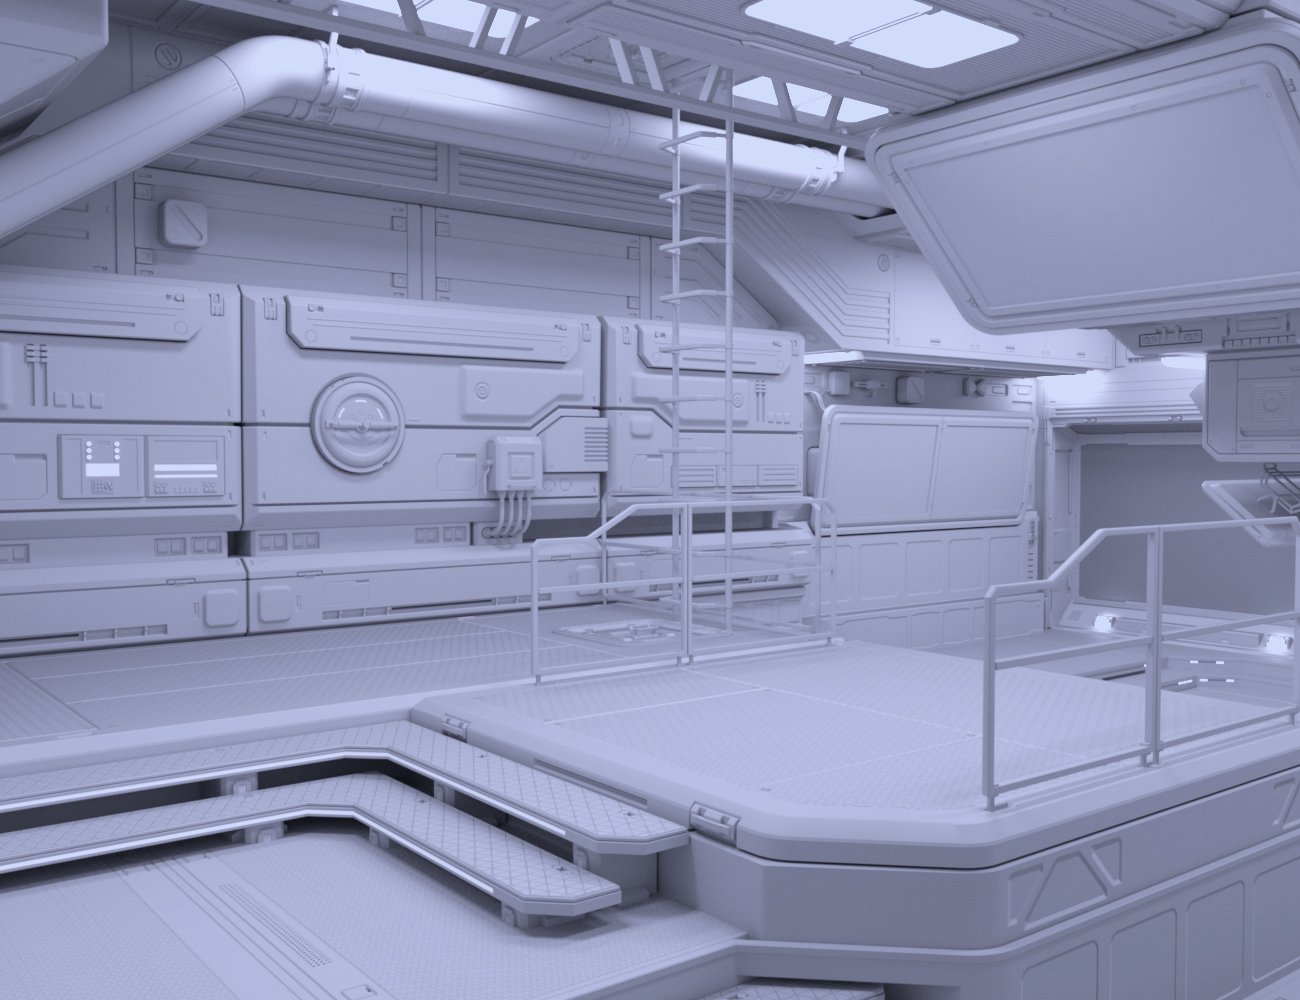 Solaris Control Cabin by: petipet, 3D Models by Daz 3D